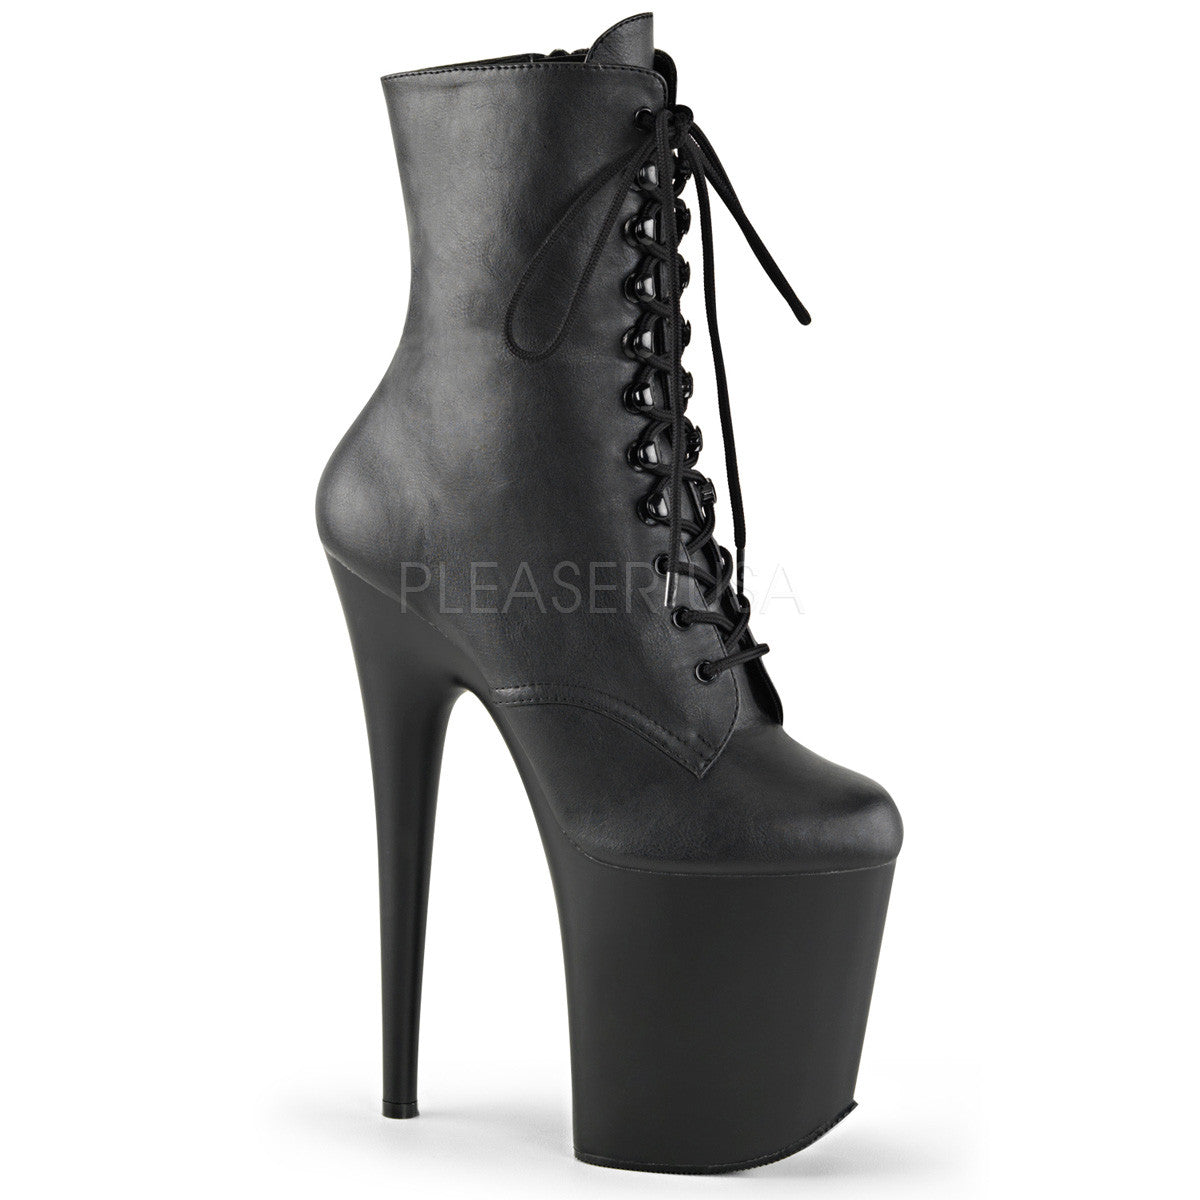 Pleaser FLAMINGO-1020 Black Faux Leather Ankle Boots - Shoecup.com - 1